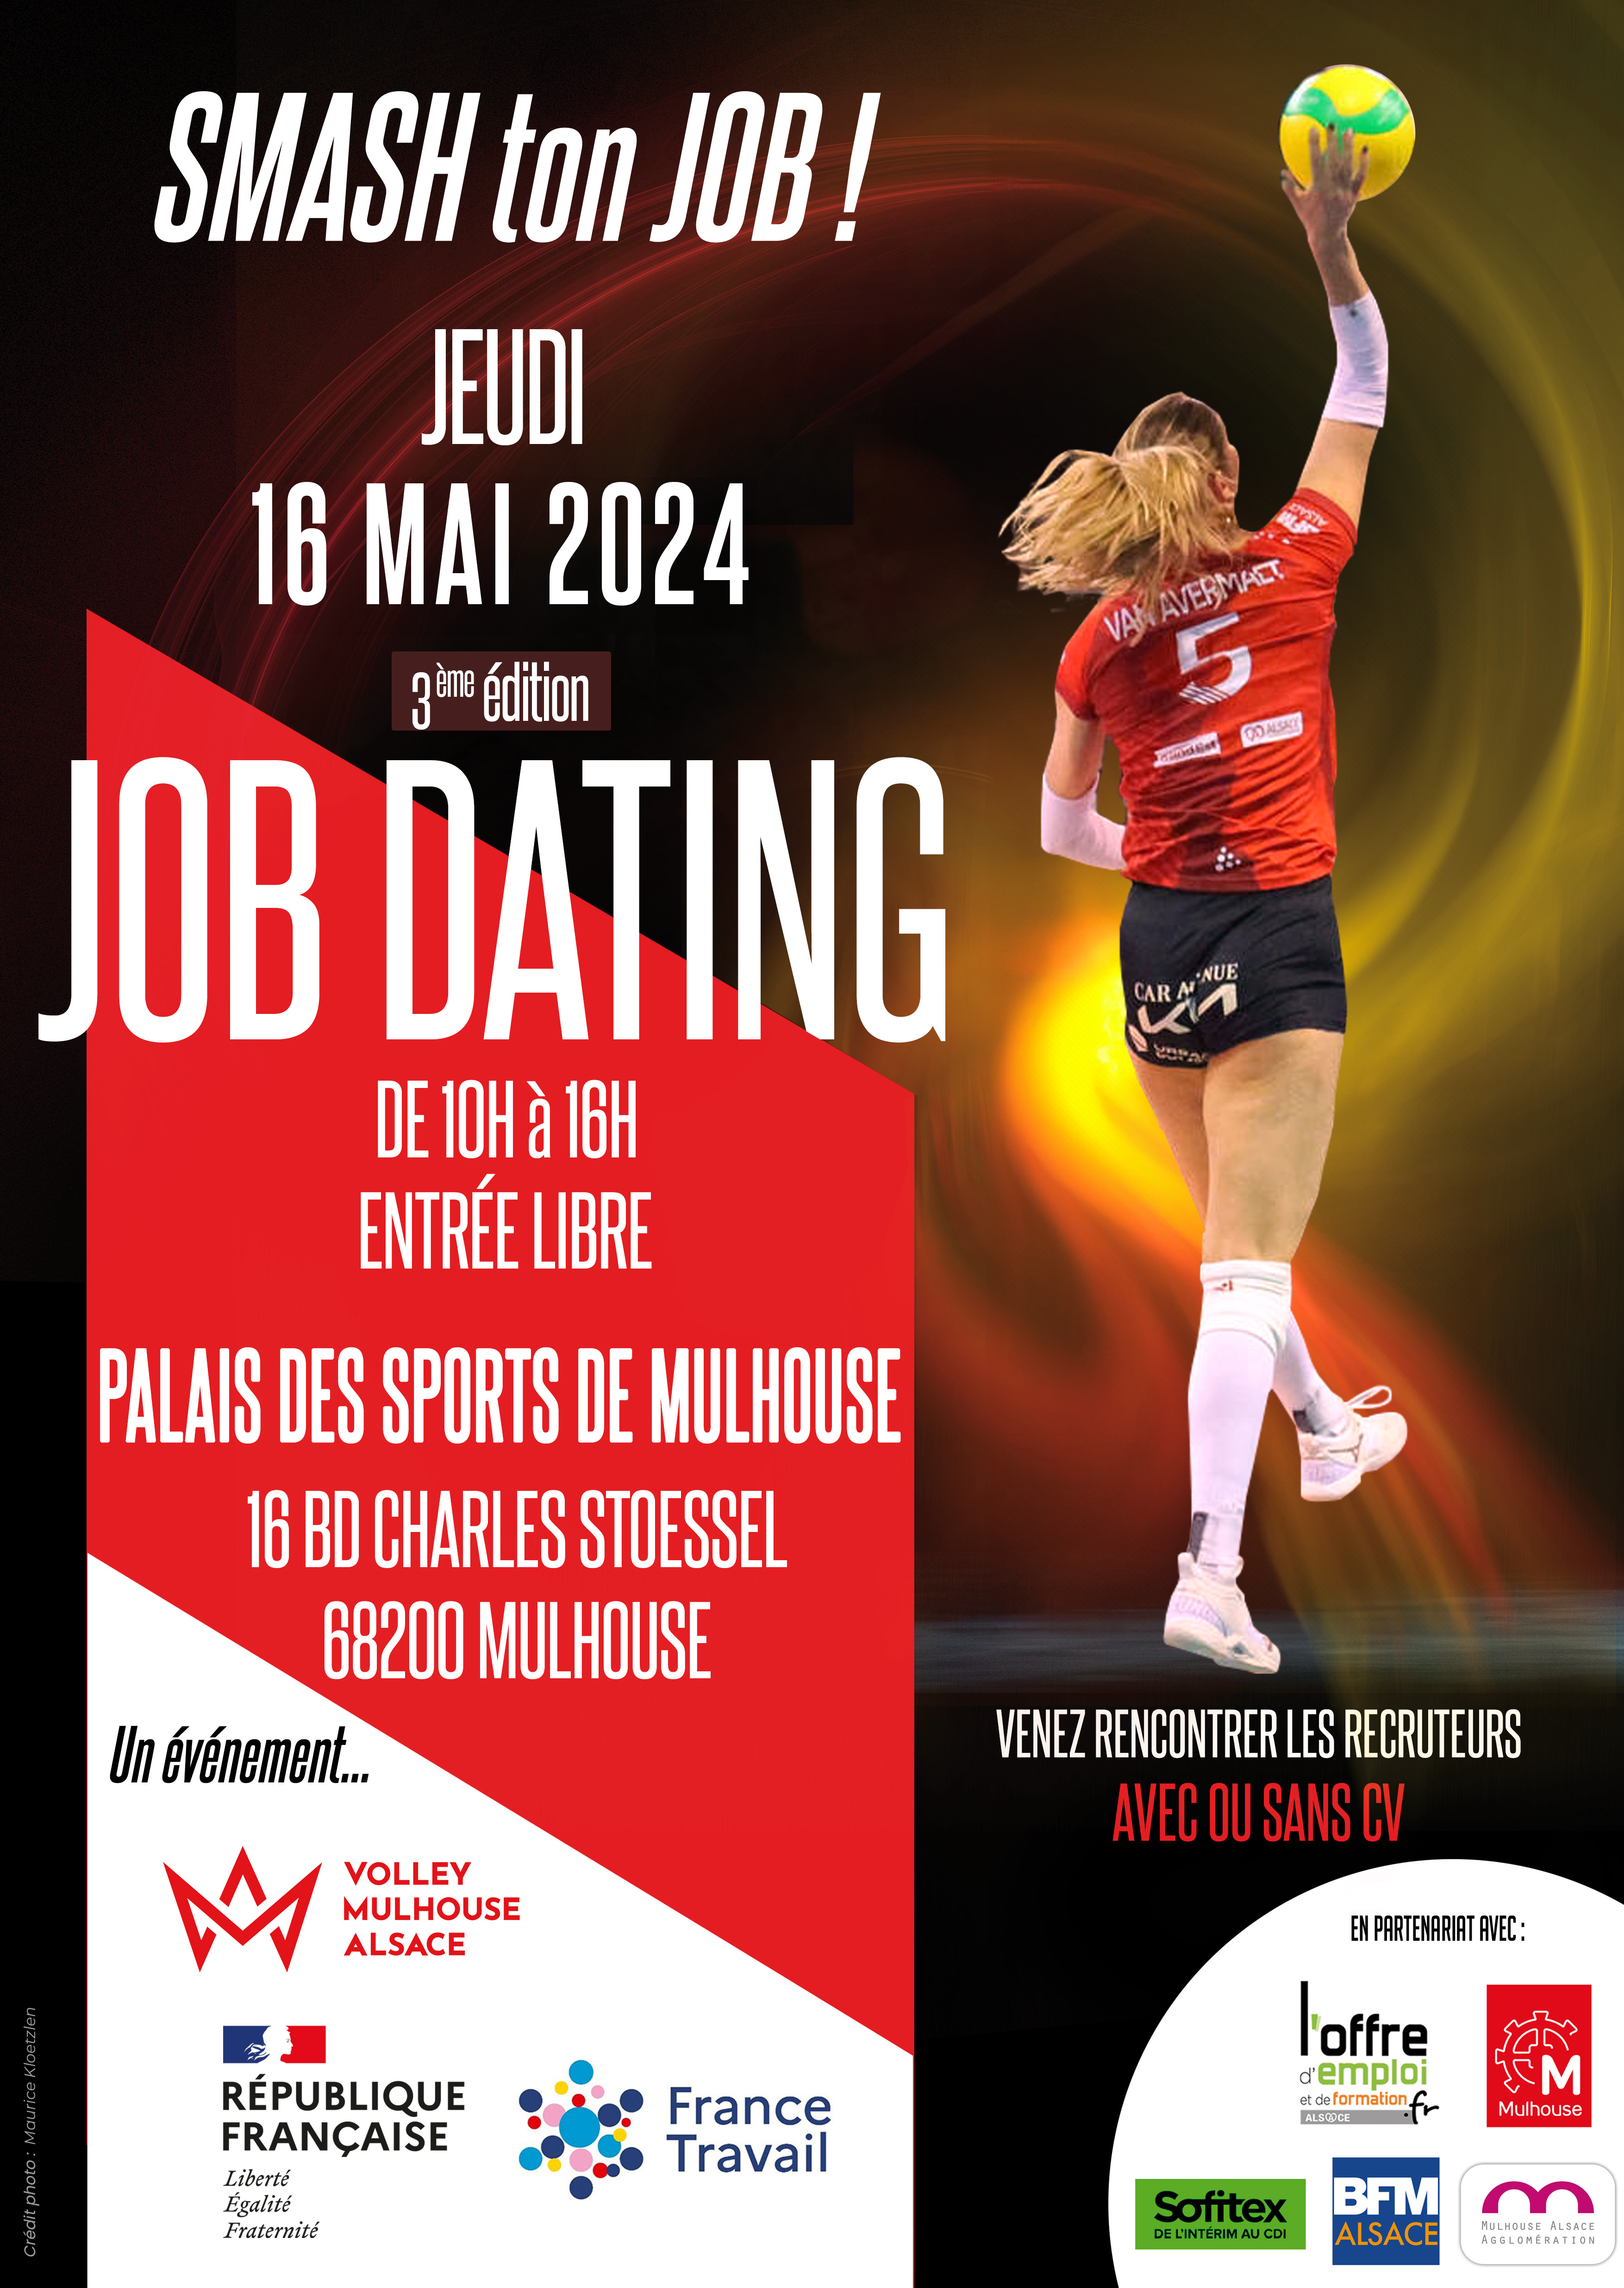 JOB DATING MULHOUSE 16 MAI 2024 recrute JOB DATING - PALAIS DES SPORTS DE MULHOUSE 16 MAI 2024